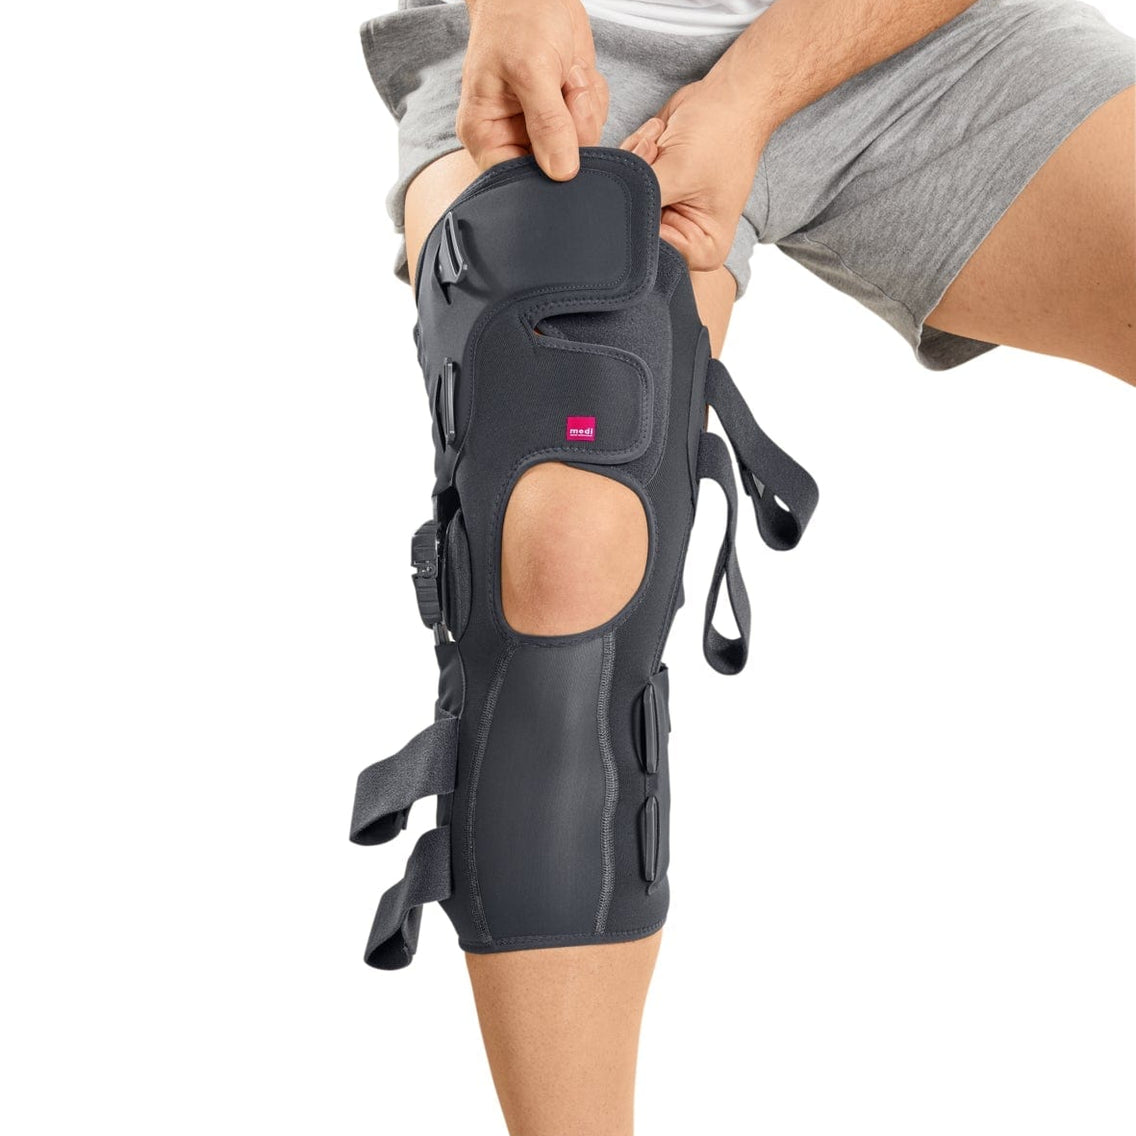 M.3 Soft OA knee brace